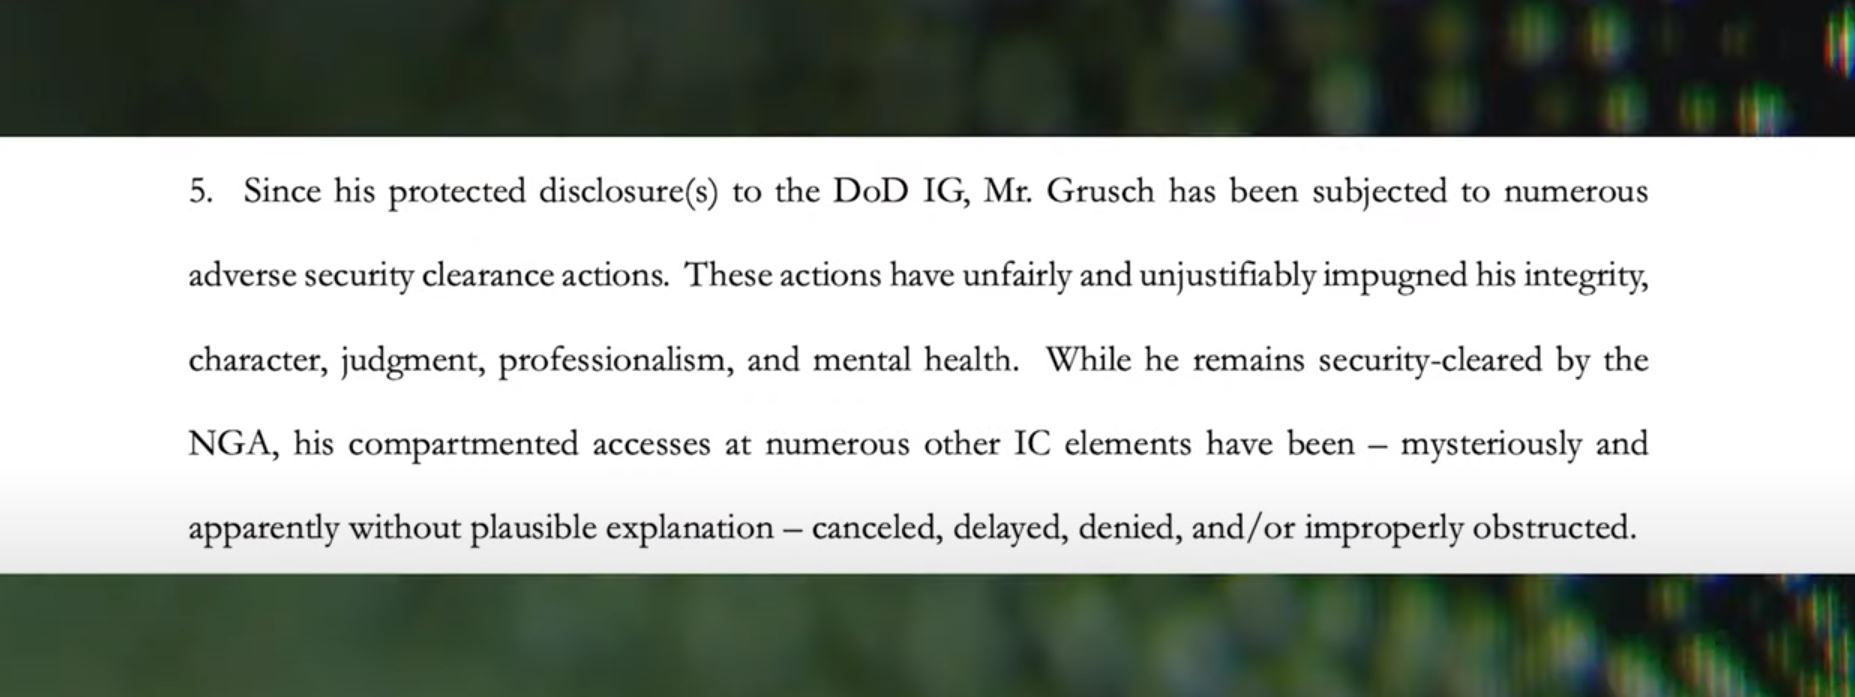 Na citação acima, um documento oficial afirma que, após divulgar as informações ao Departamento de Defesa dos EUA, Grusch começou a enfrentar reações negativas em seu trabalho.